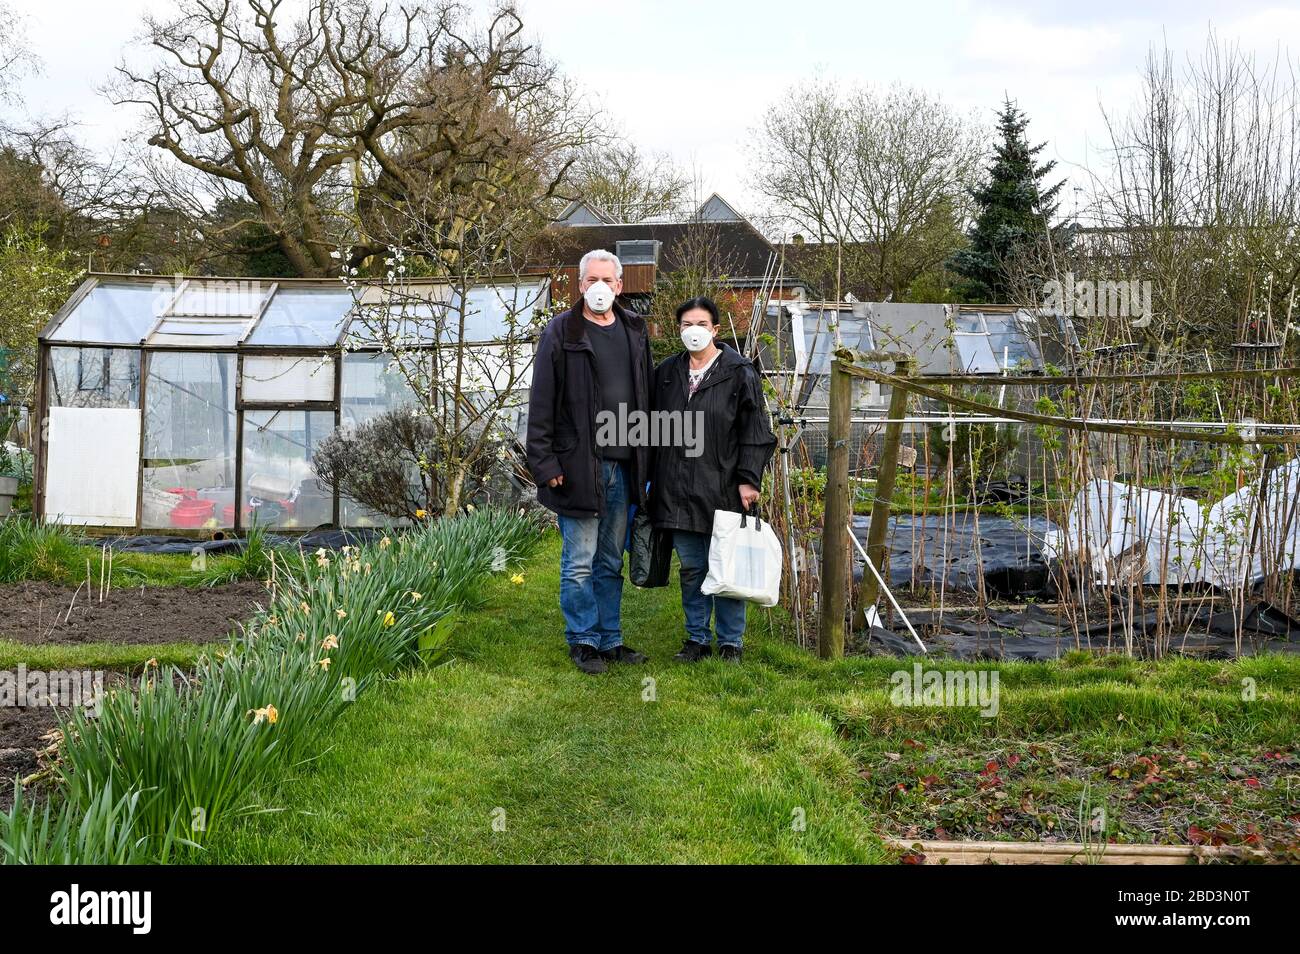 Un couple marié plus âgé porte des masques lorsqu'il arrive dans un jardin d'allotissement pendant la pandémie de coronavirus covid-19. Banque D'Images